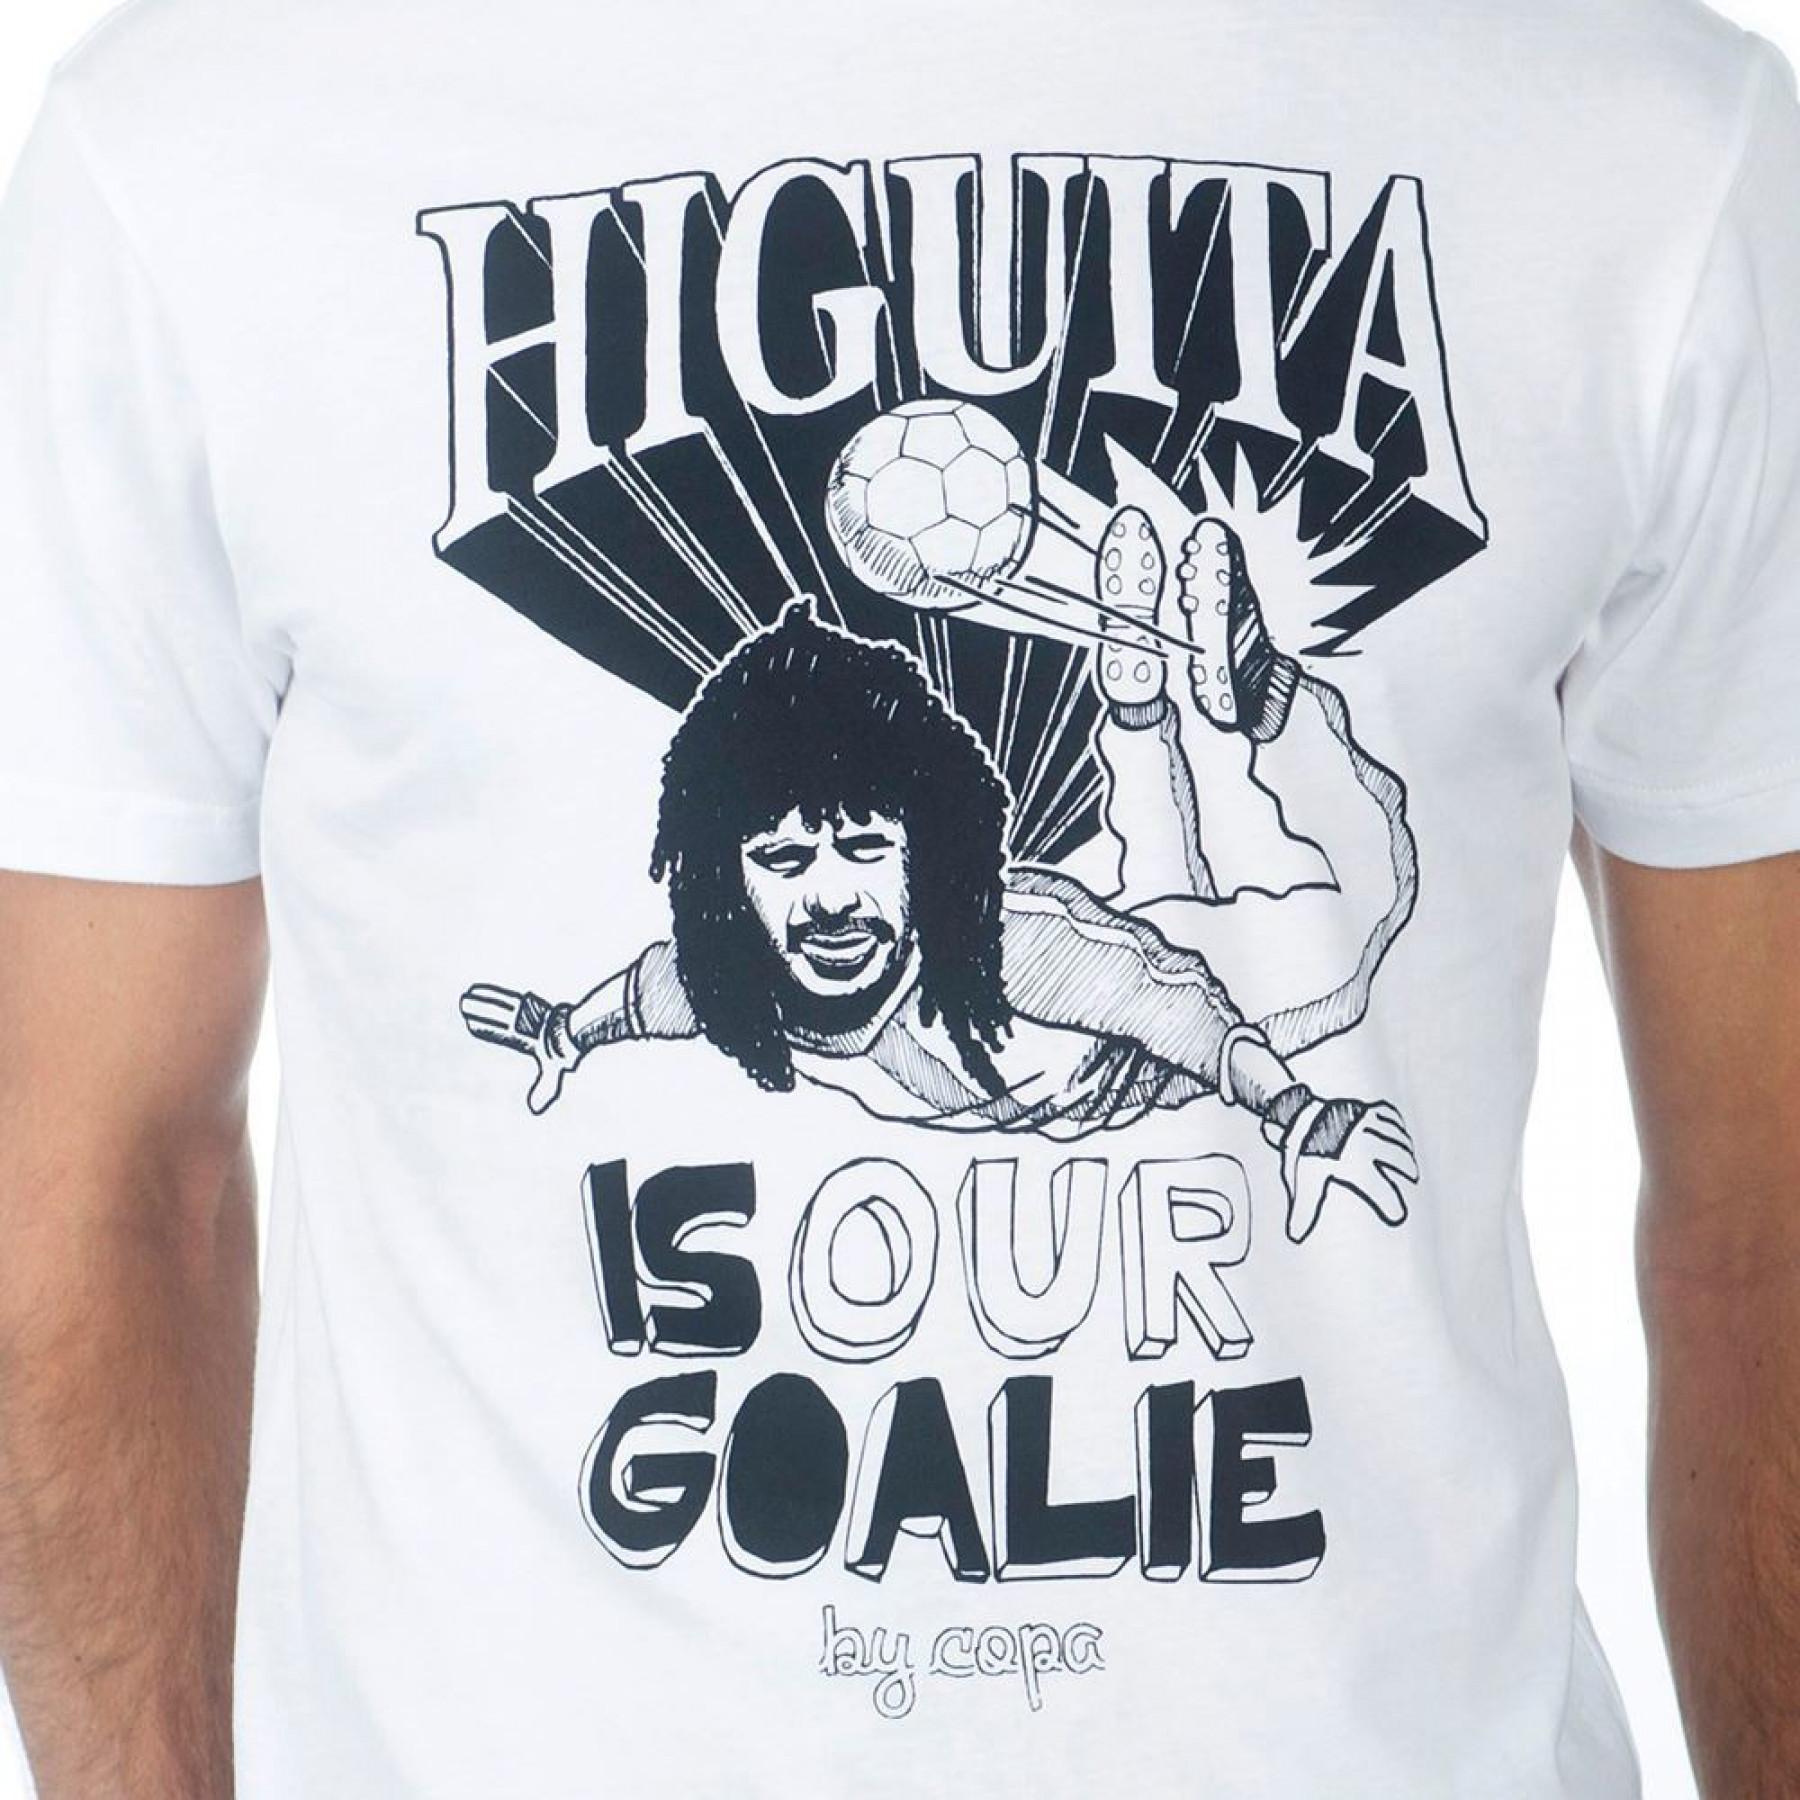 T-shirt Copa Football Higuita